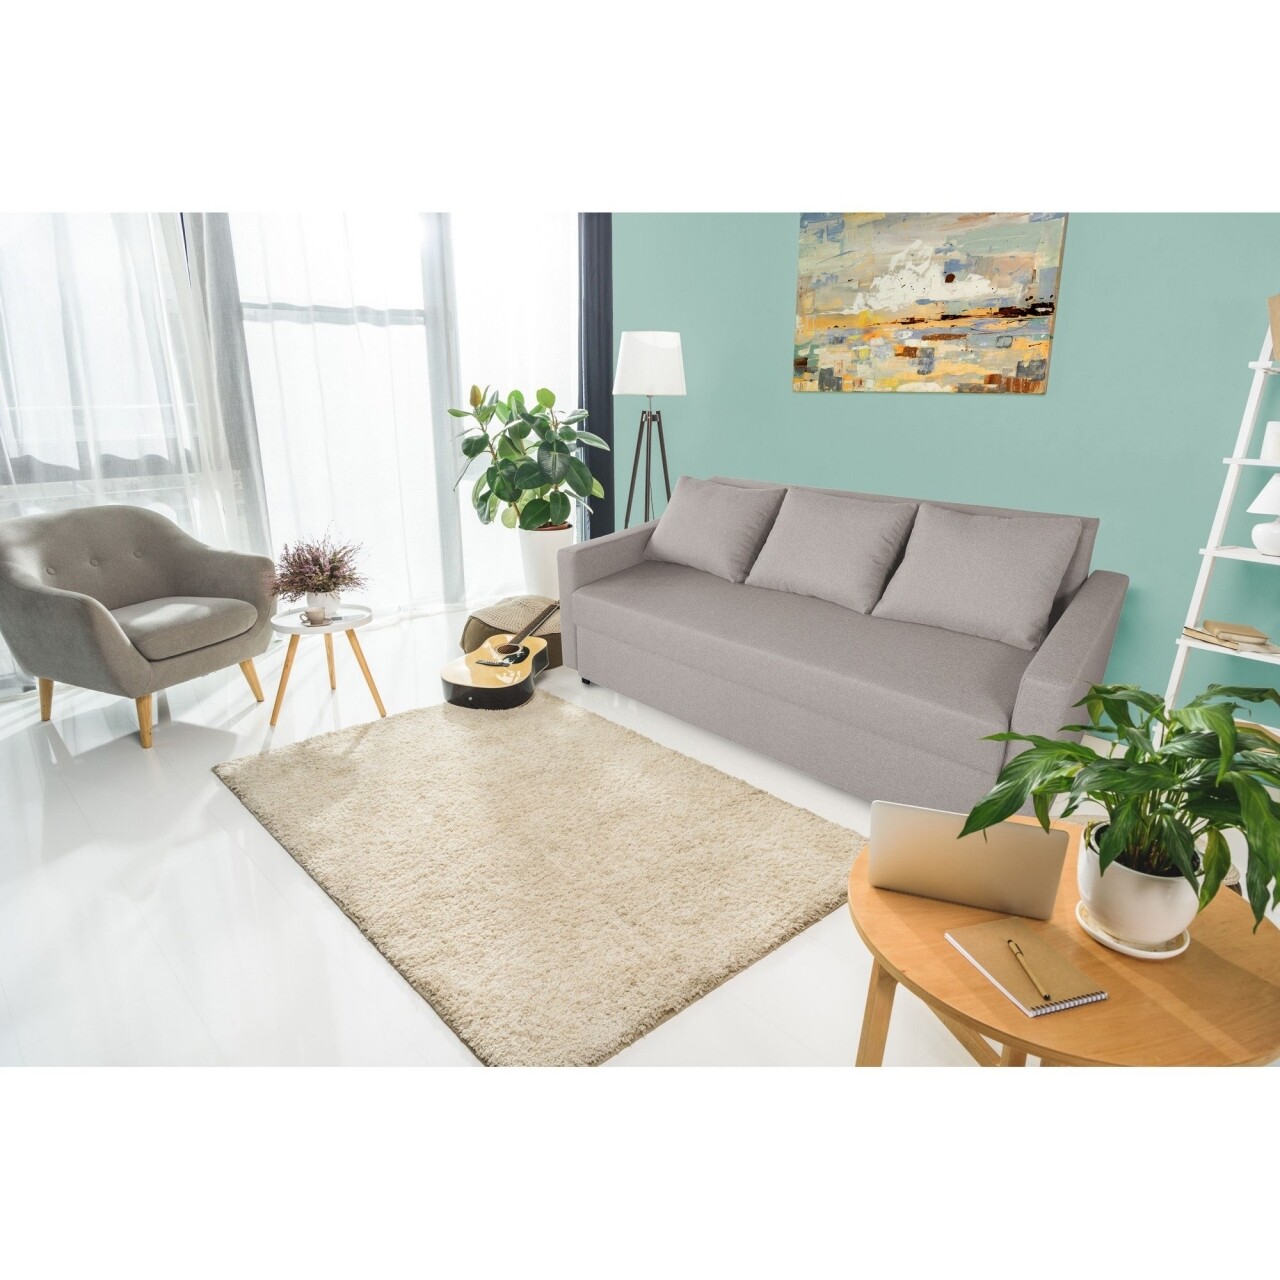 Bedora firenze kihúzható kanapé beige 218x85x85cm tárolóládával